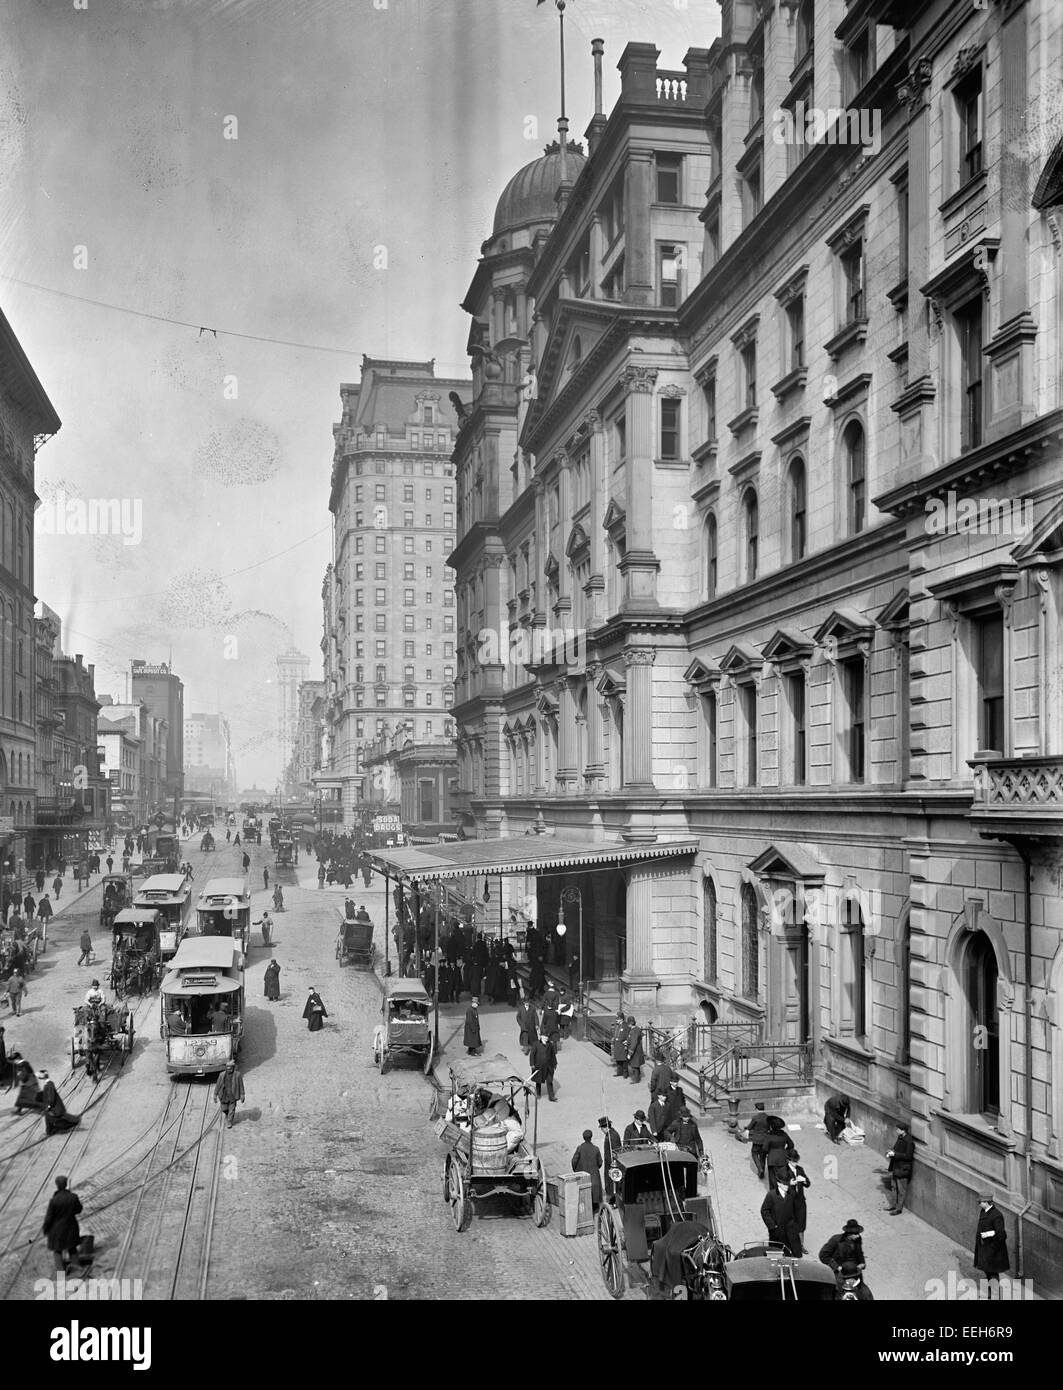 La città di New York, Snap Shatow, 42nd Street, mostrando ingresso alla stazione Grand Central, circa 1910 Foto Stock